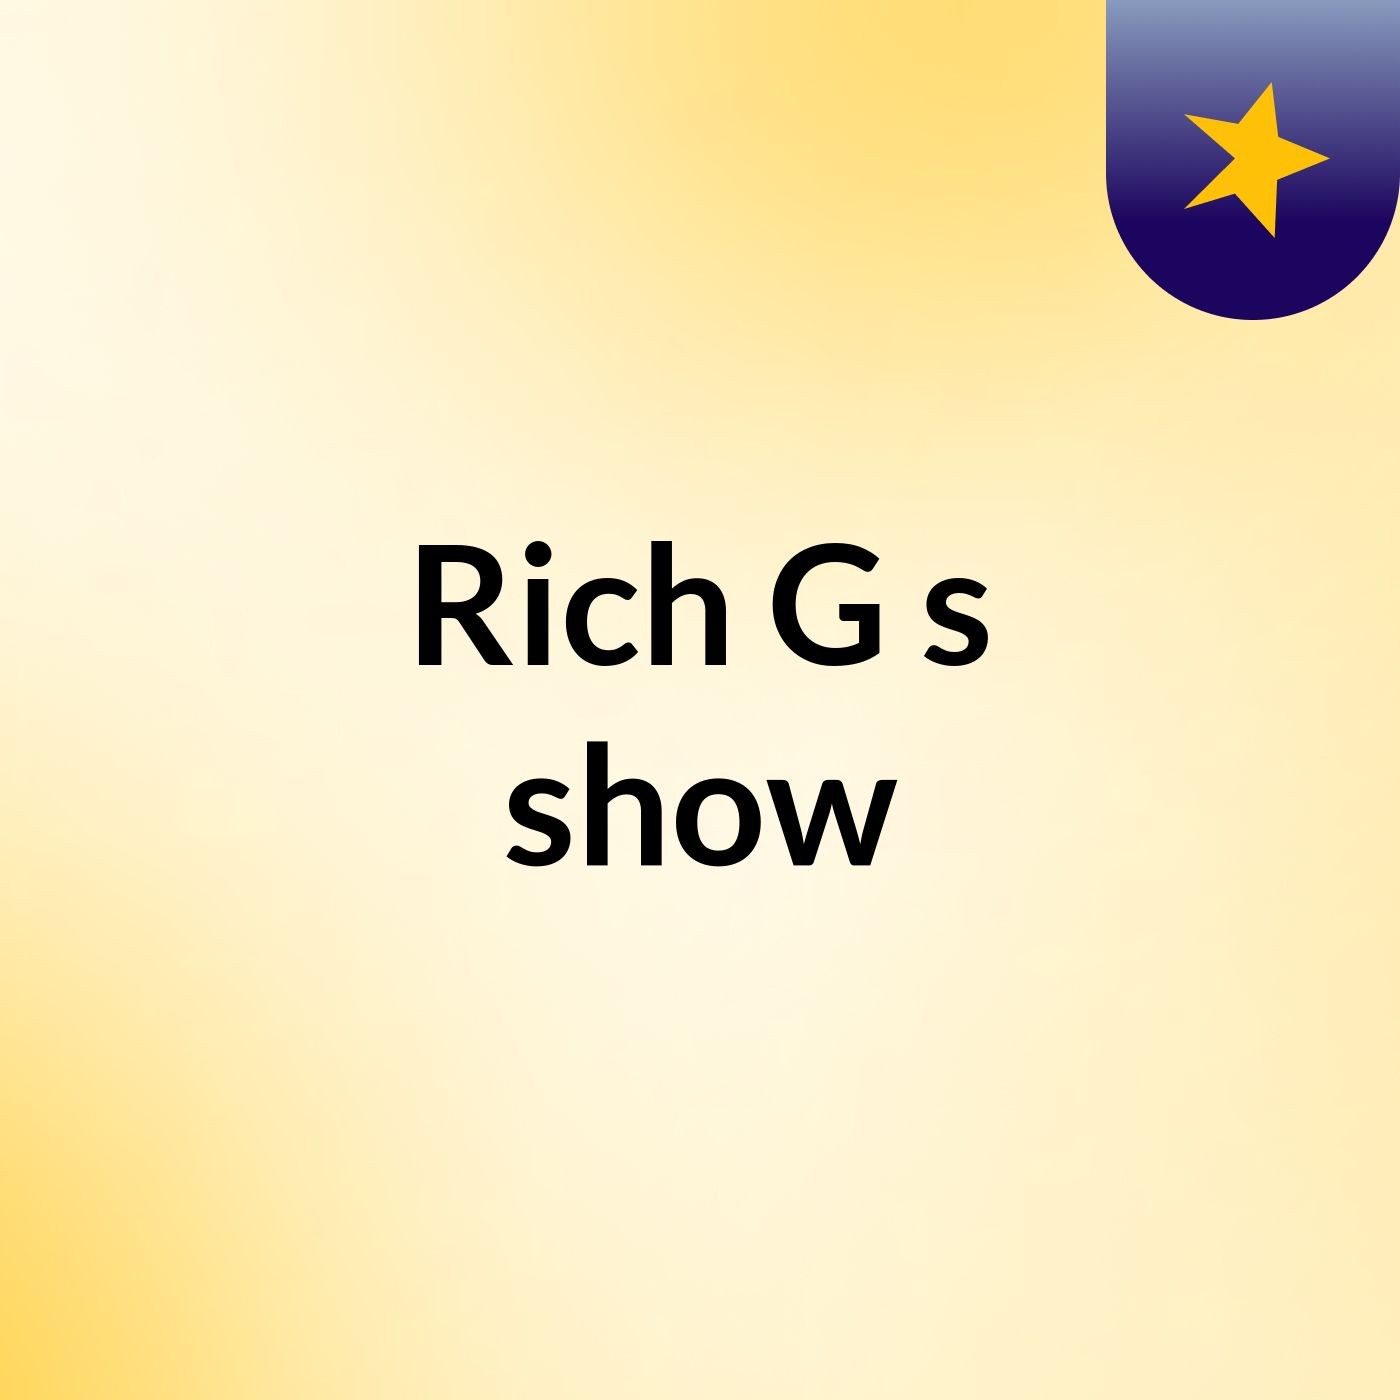 Rich G's show